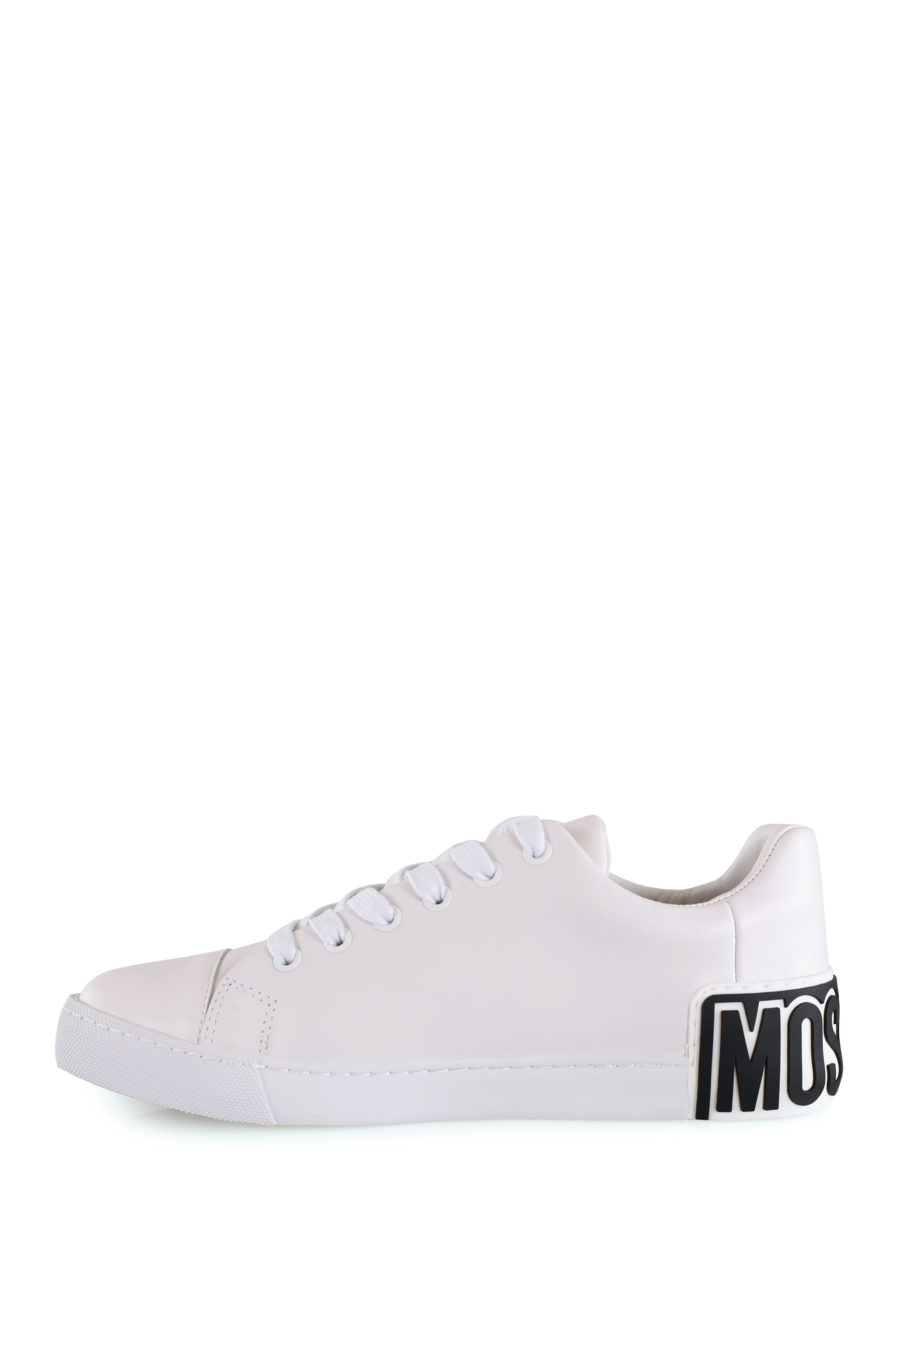 Zapatillas blancas con logo de goma - IMG 8491 copia